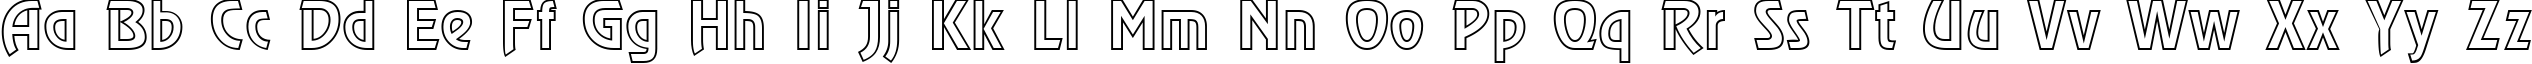 Пример написания английского алфавита шрифтом a_RewinderOtl